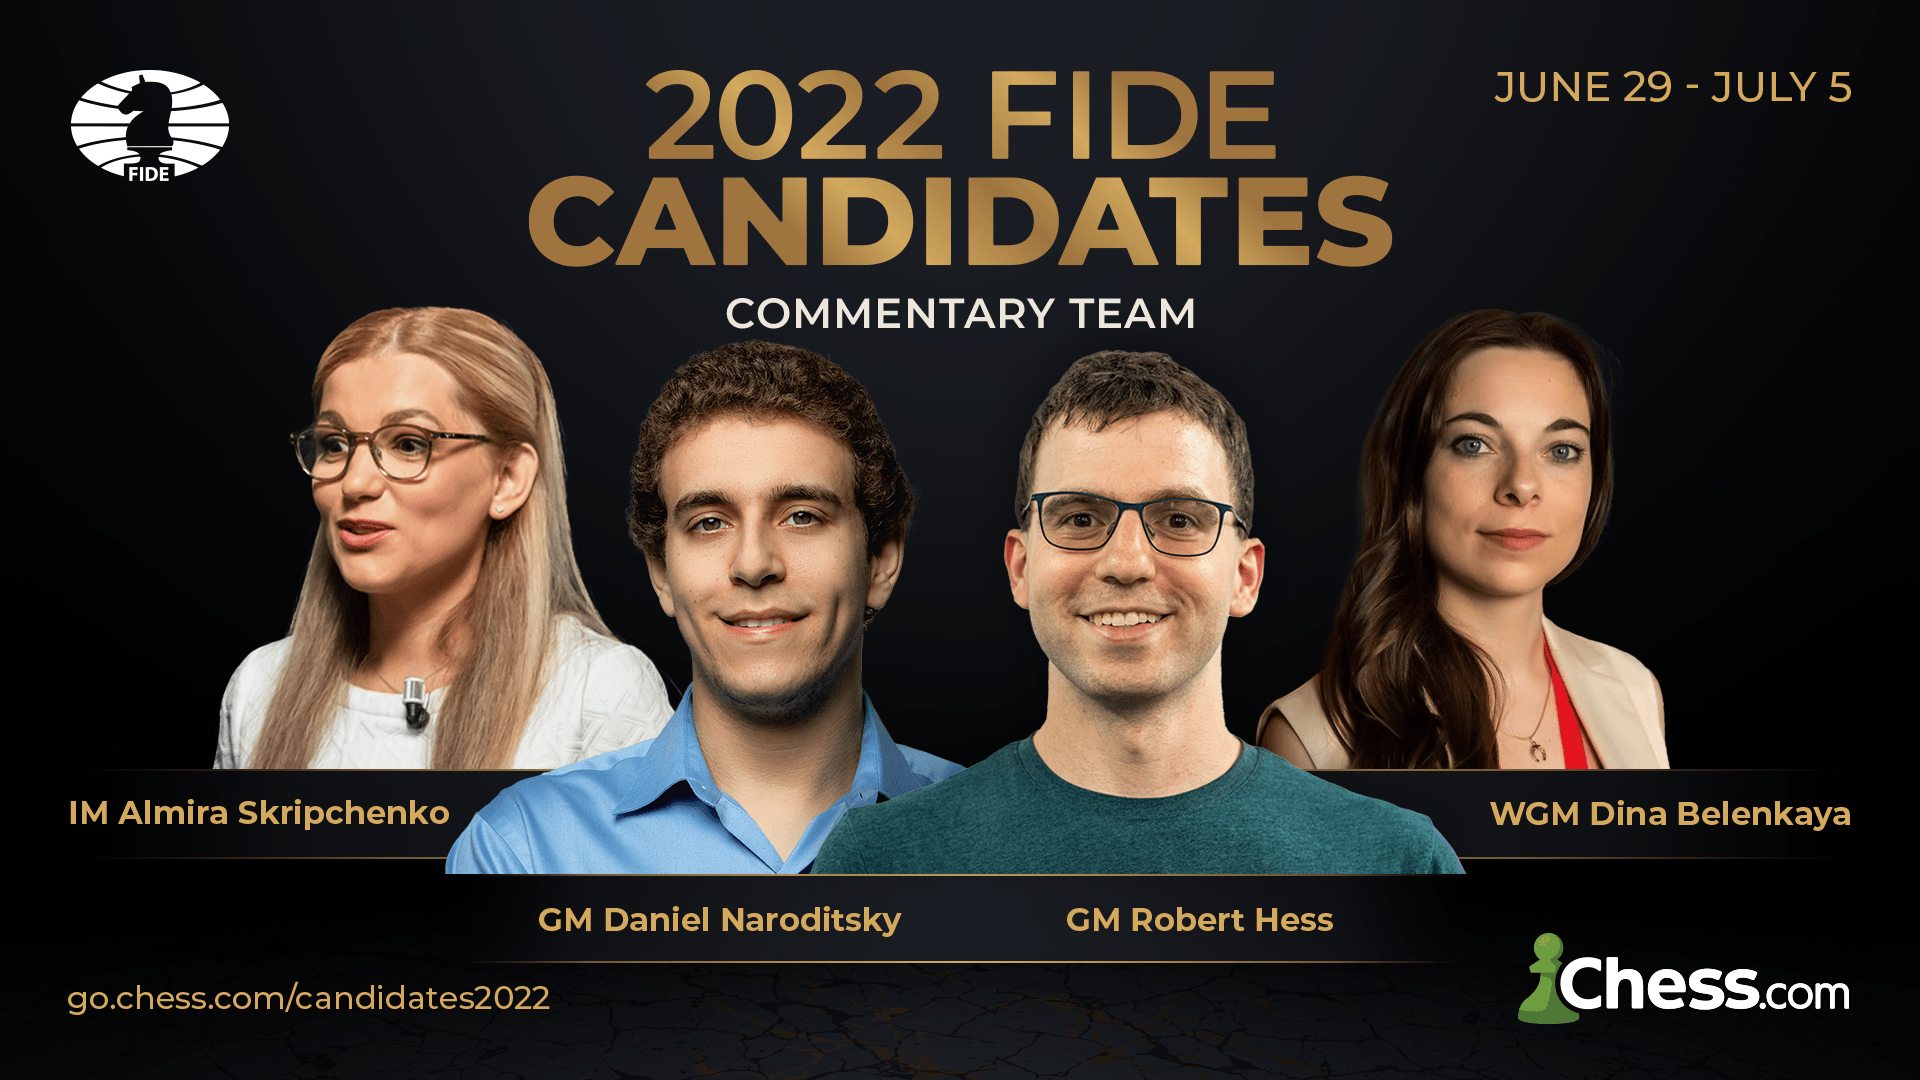 2022 FIDE Candidates Tournament Chess.com Commentators